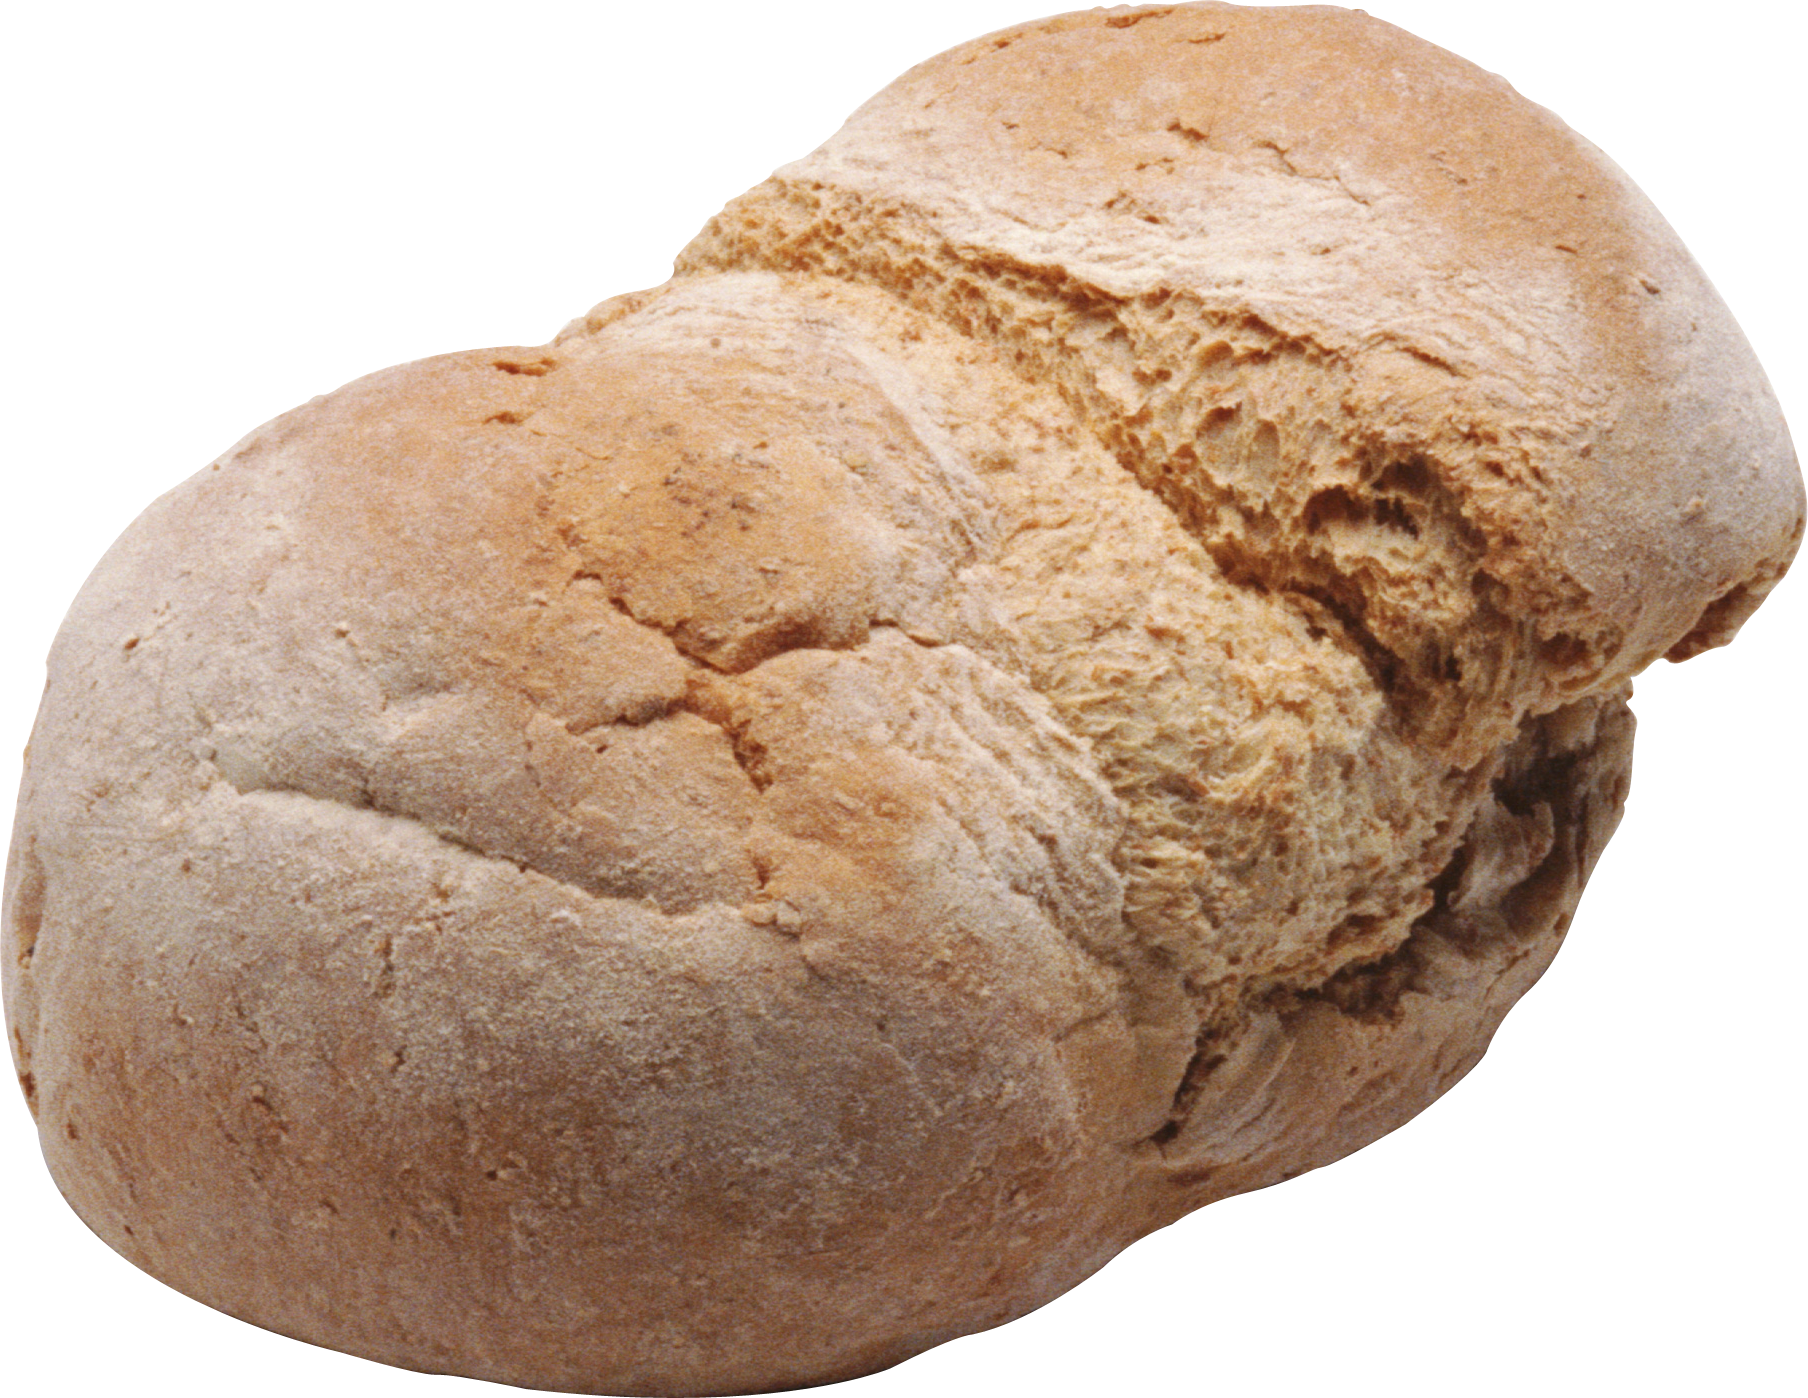 芝麻面包